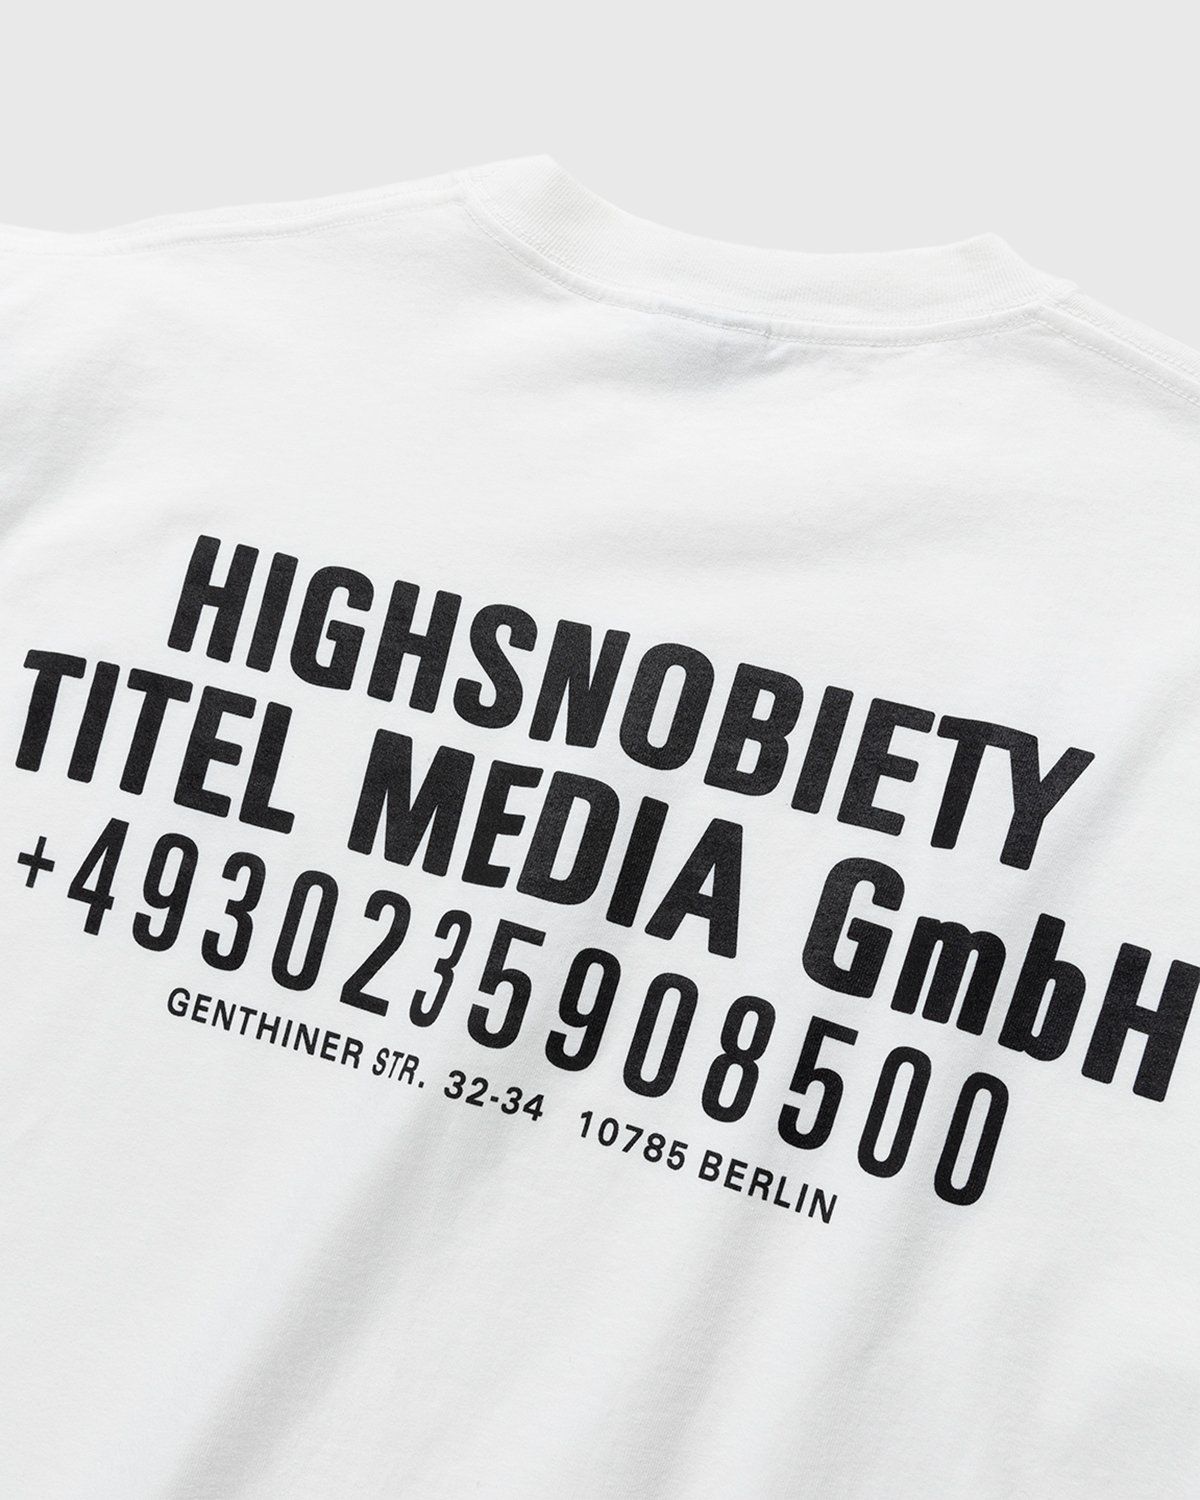 Highsnobiety – Titel Media GmbH T-Shirt White - Image 3